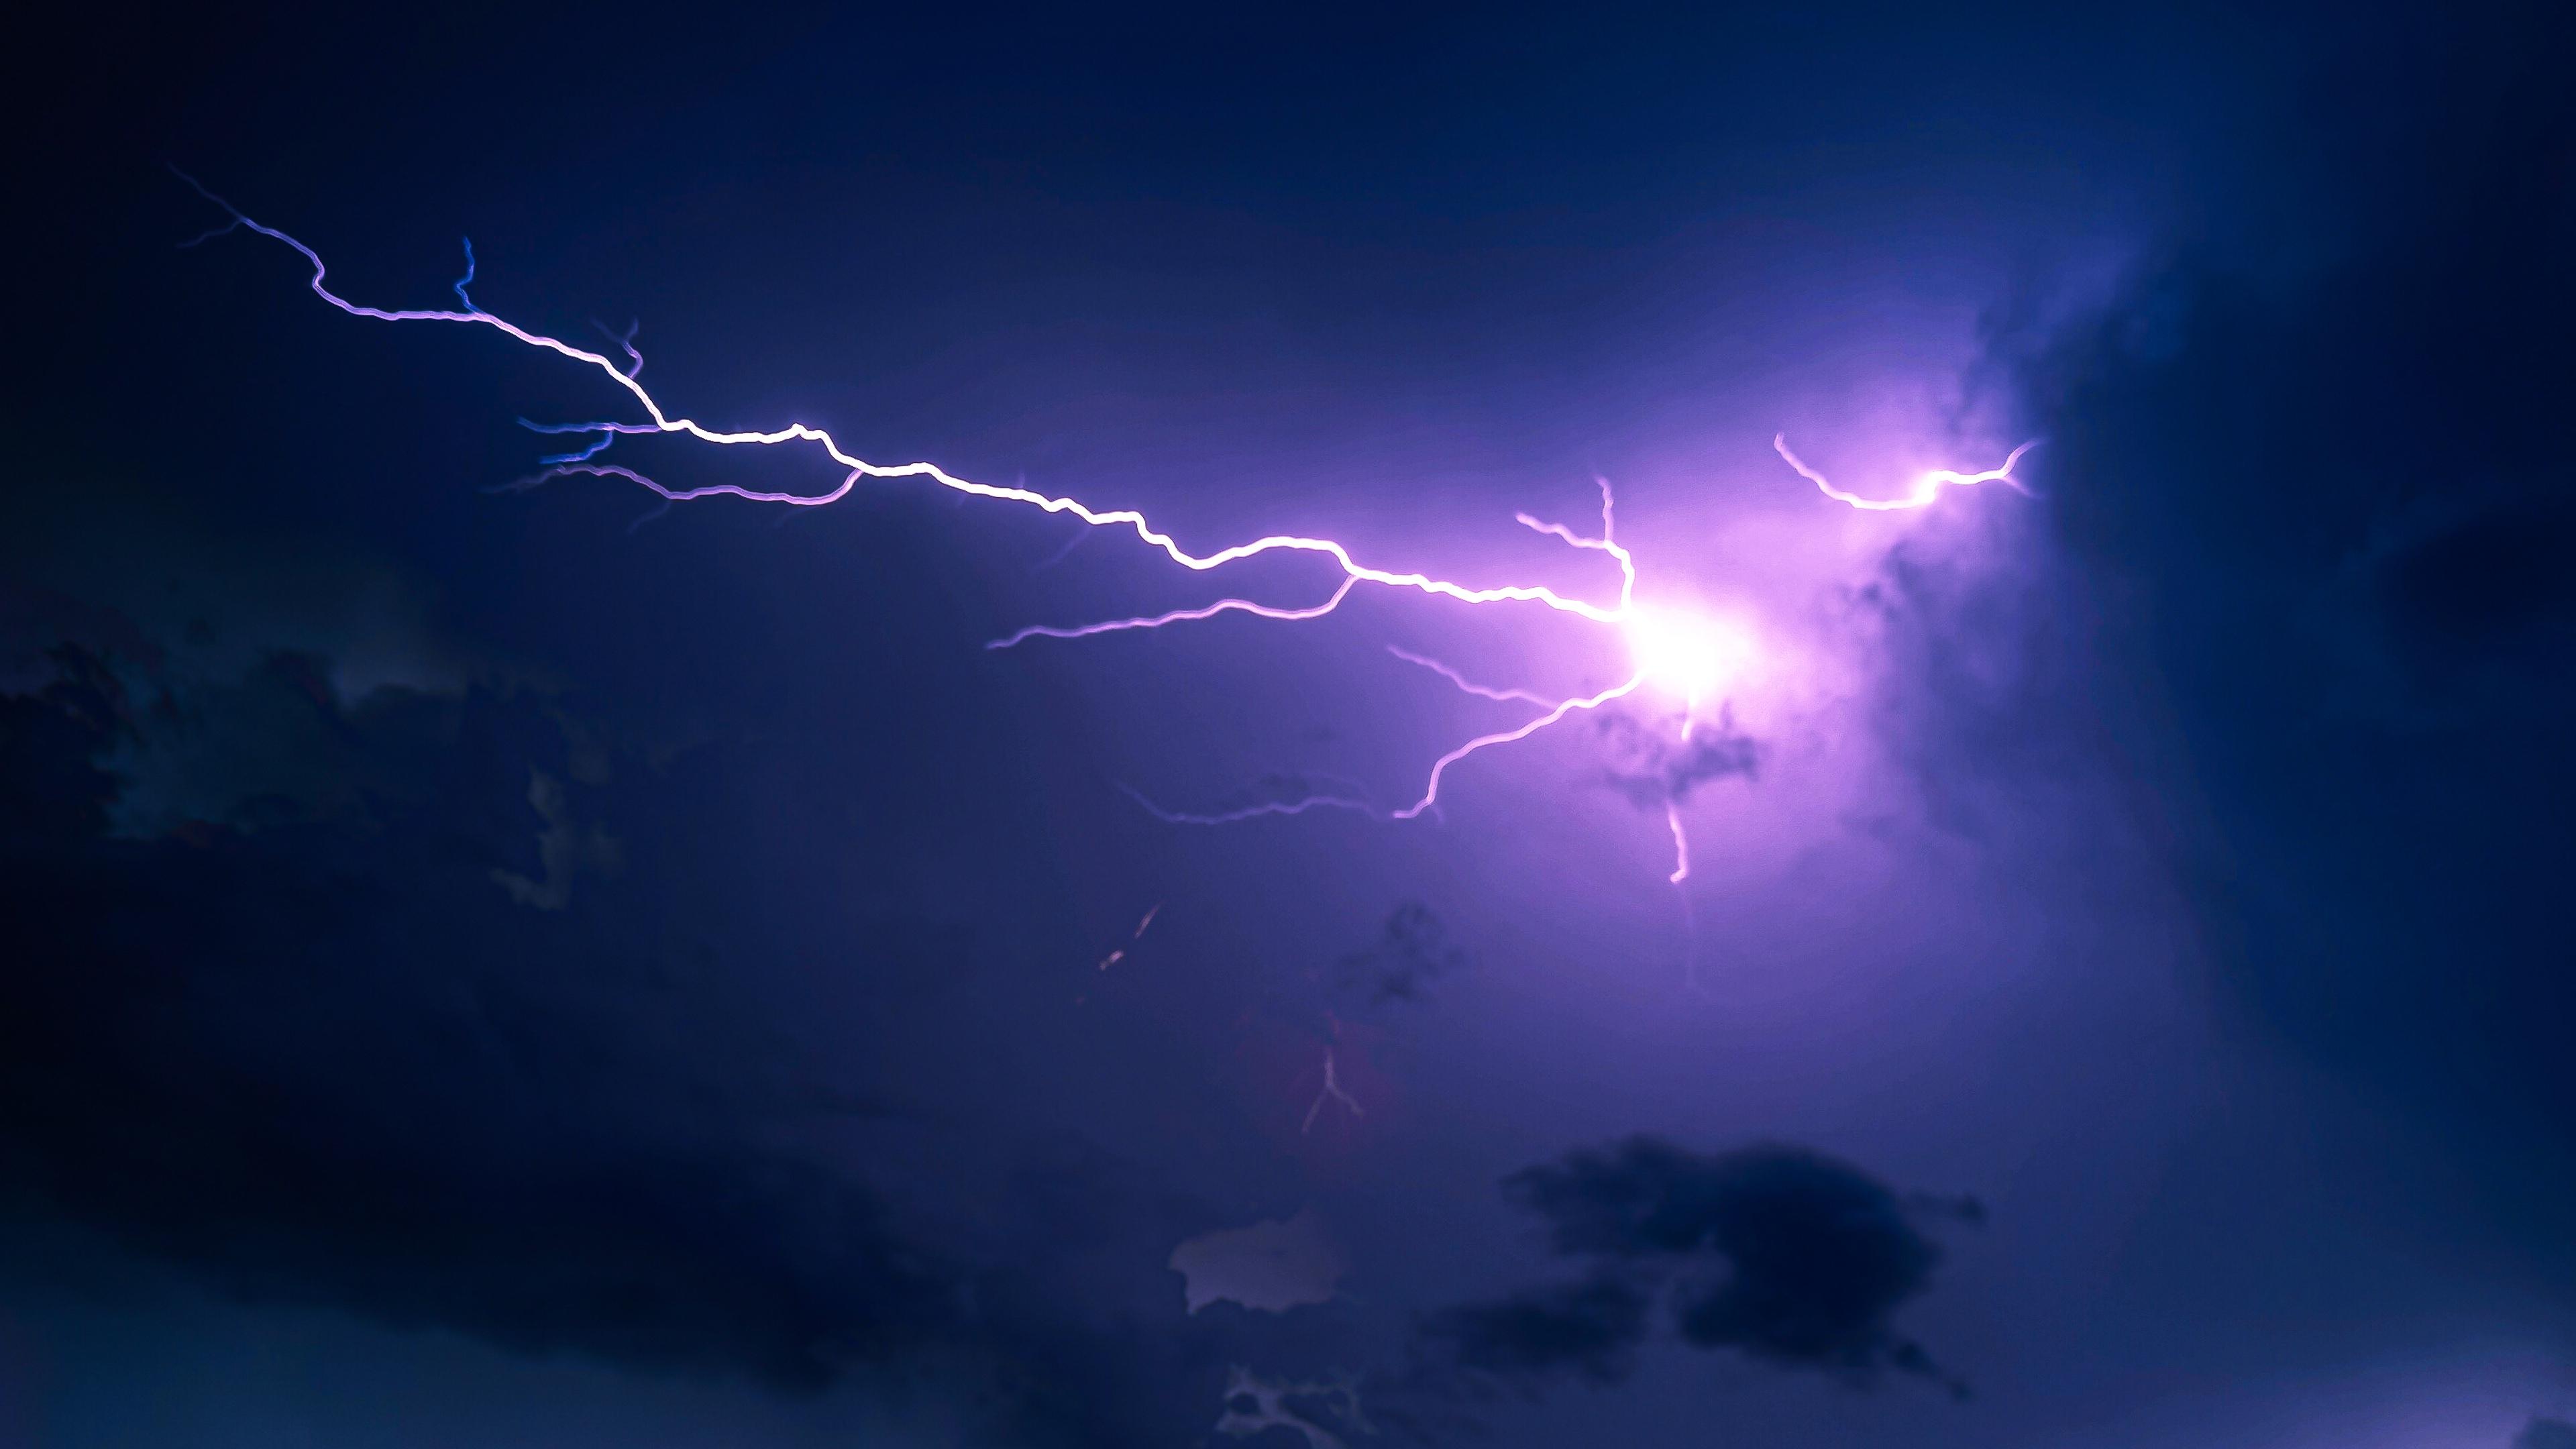 壁纸 : 云彩, 闪电, 风暴, 大气层, 天气, 雷雨, 地质现象 1920x1200 - alex93s - 163112 - 电脑桌面 ...